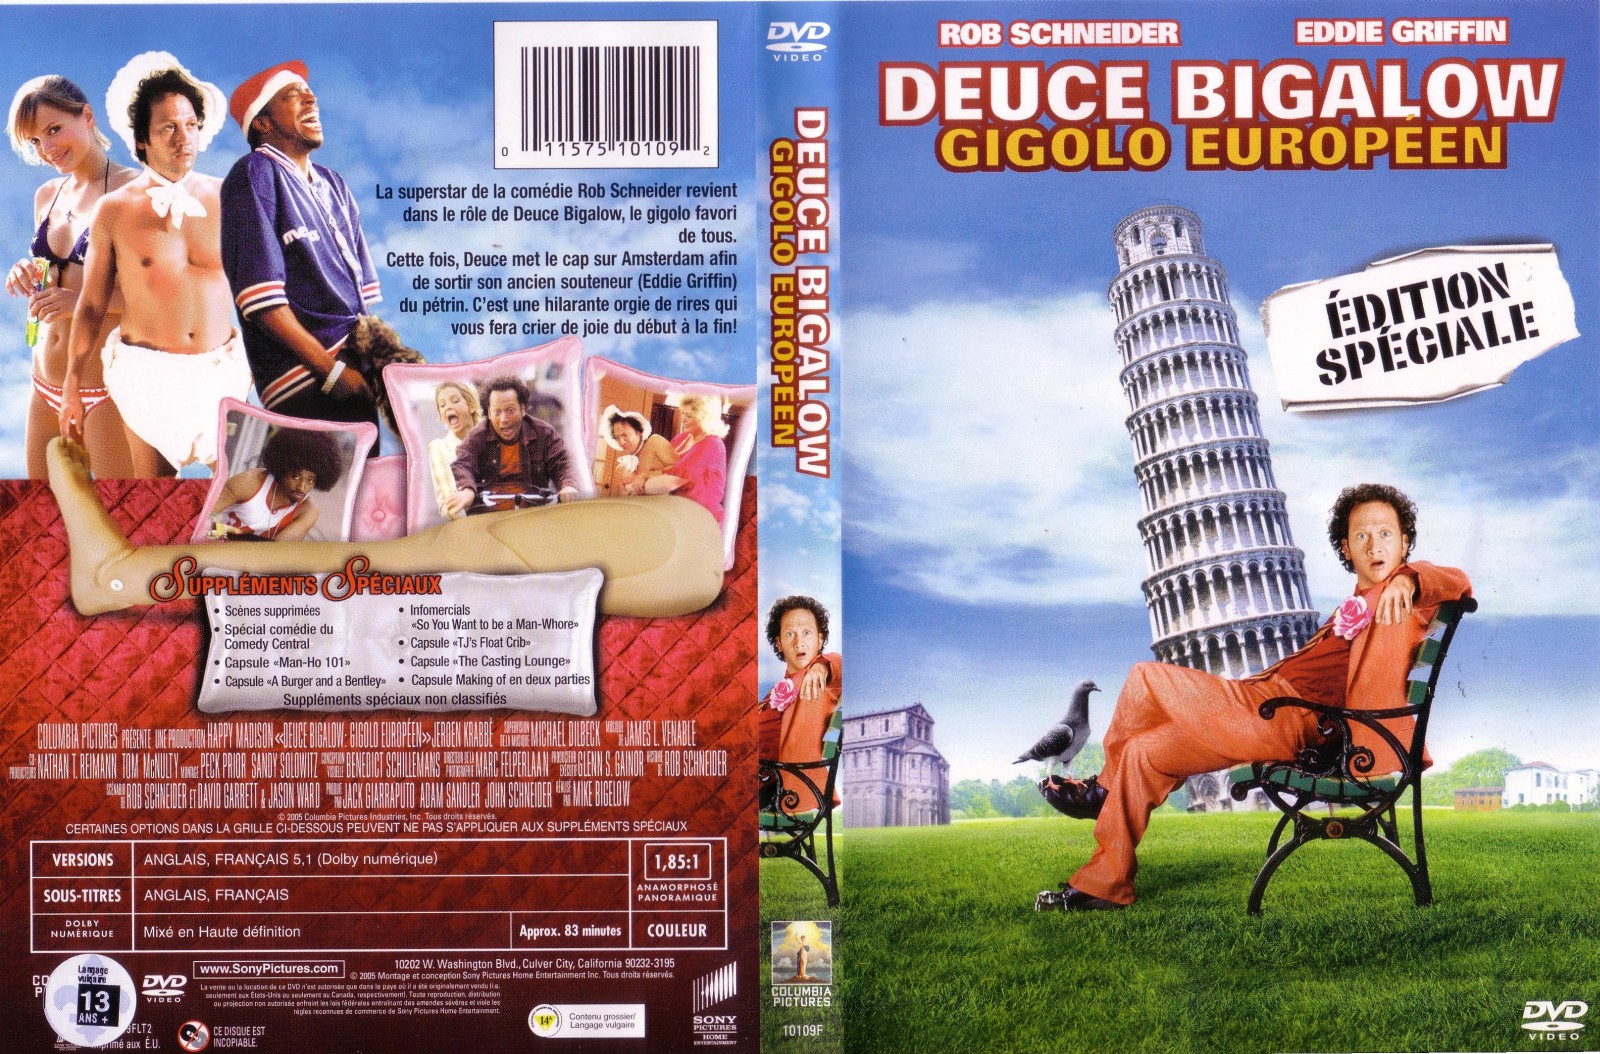 Jaquette DVD Gigolo europen